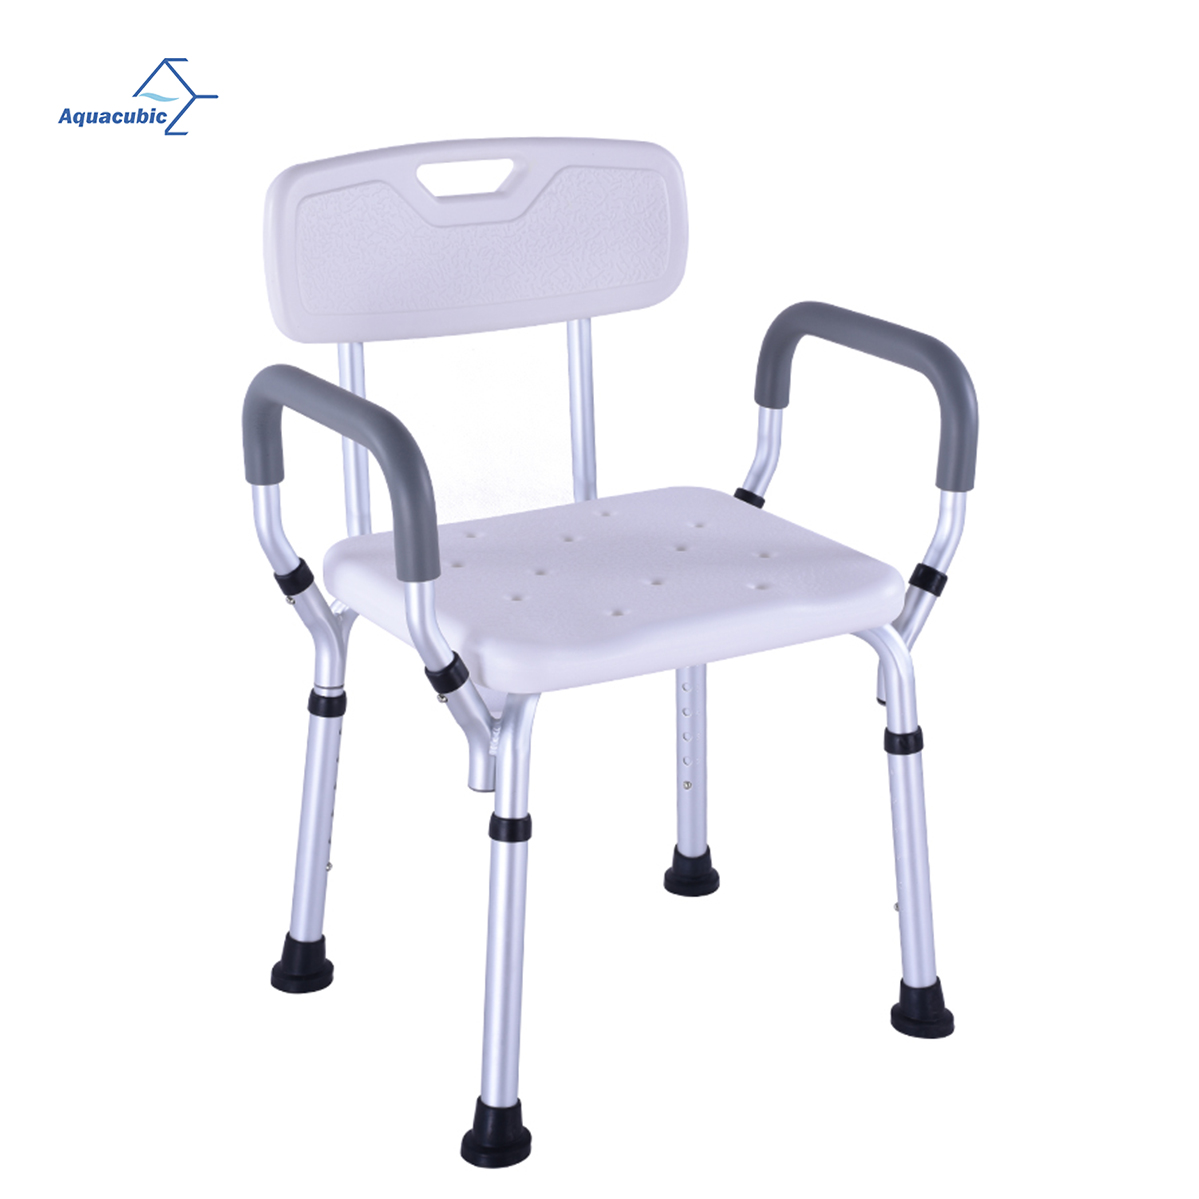 Banc de chaise de siège de douche réglable médical en aluminium tabouret de bain siège de douche avec support